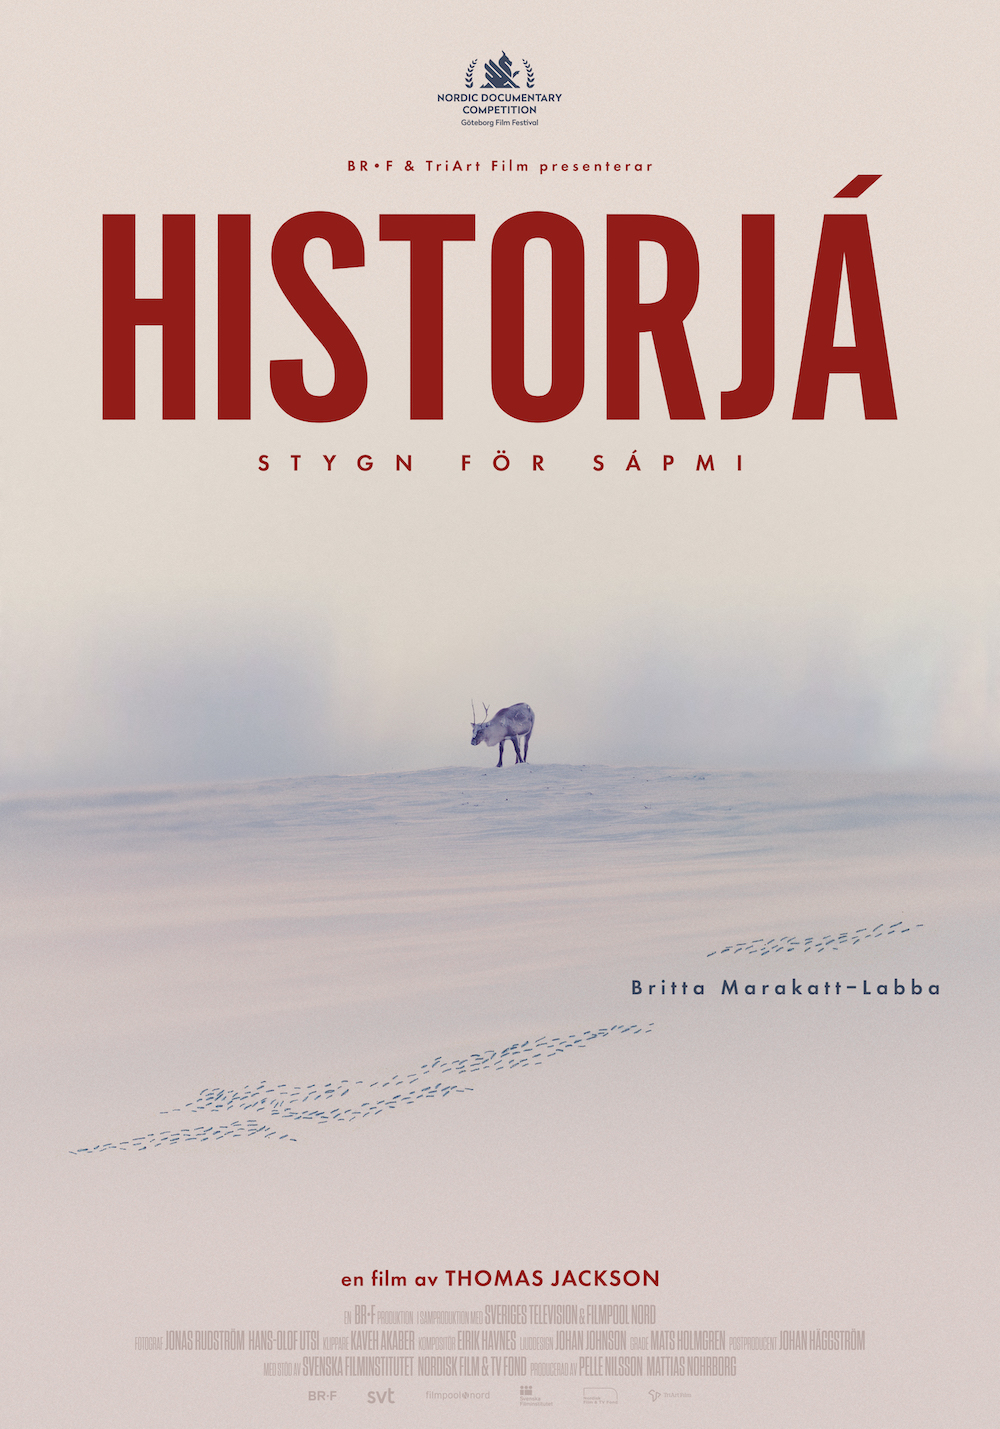 Omslag till filmen: Historjá - Stygn för Sápmi